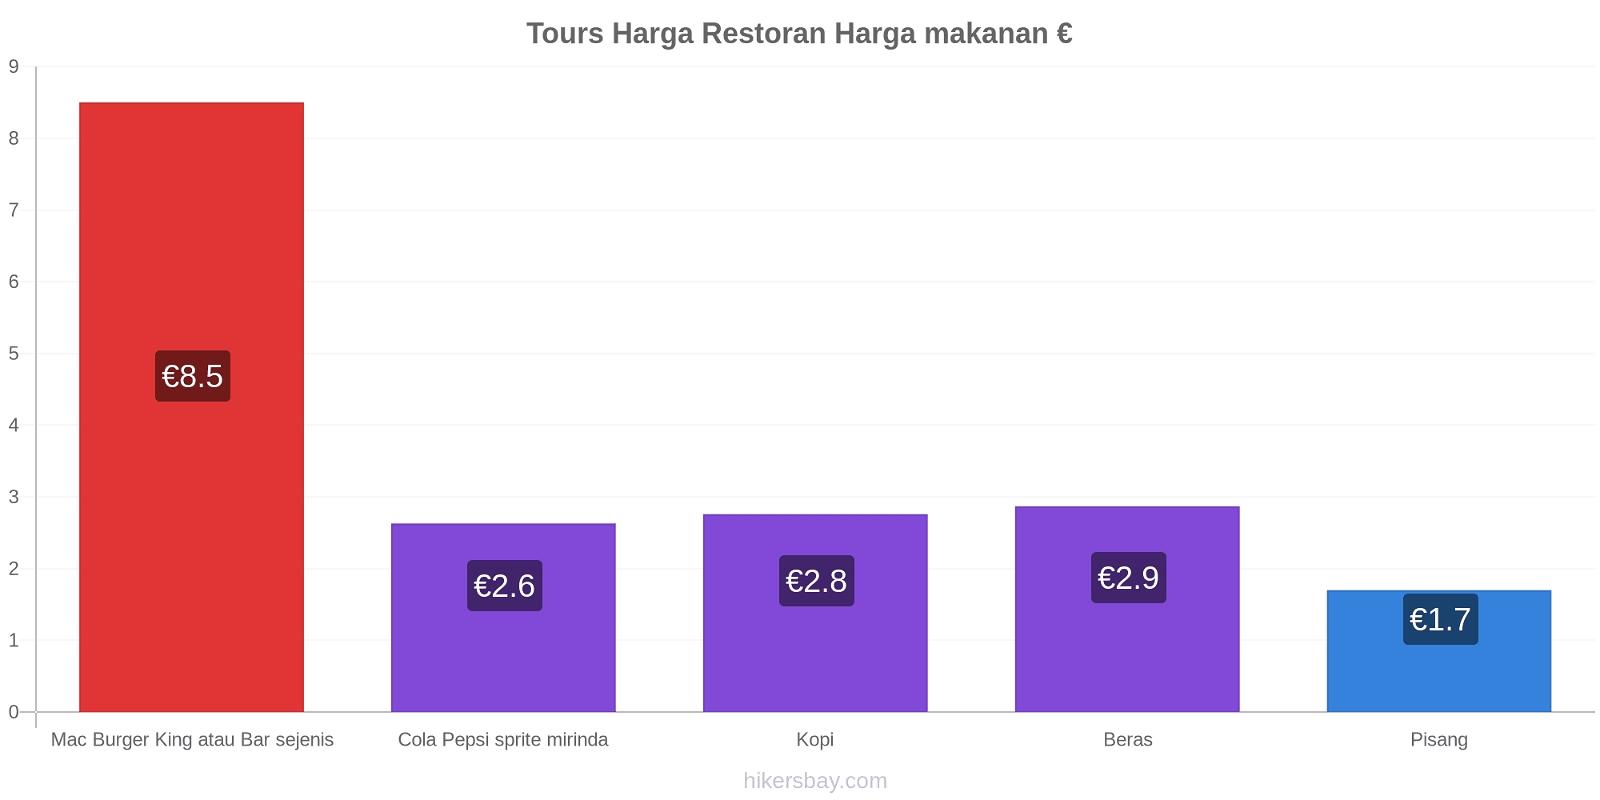 Tours perubahan harga hikersbay.com